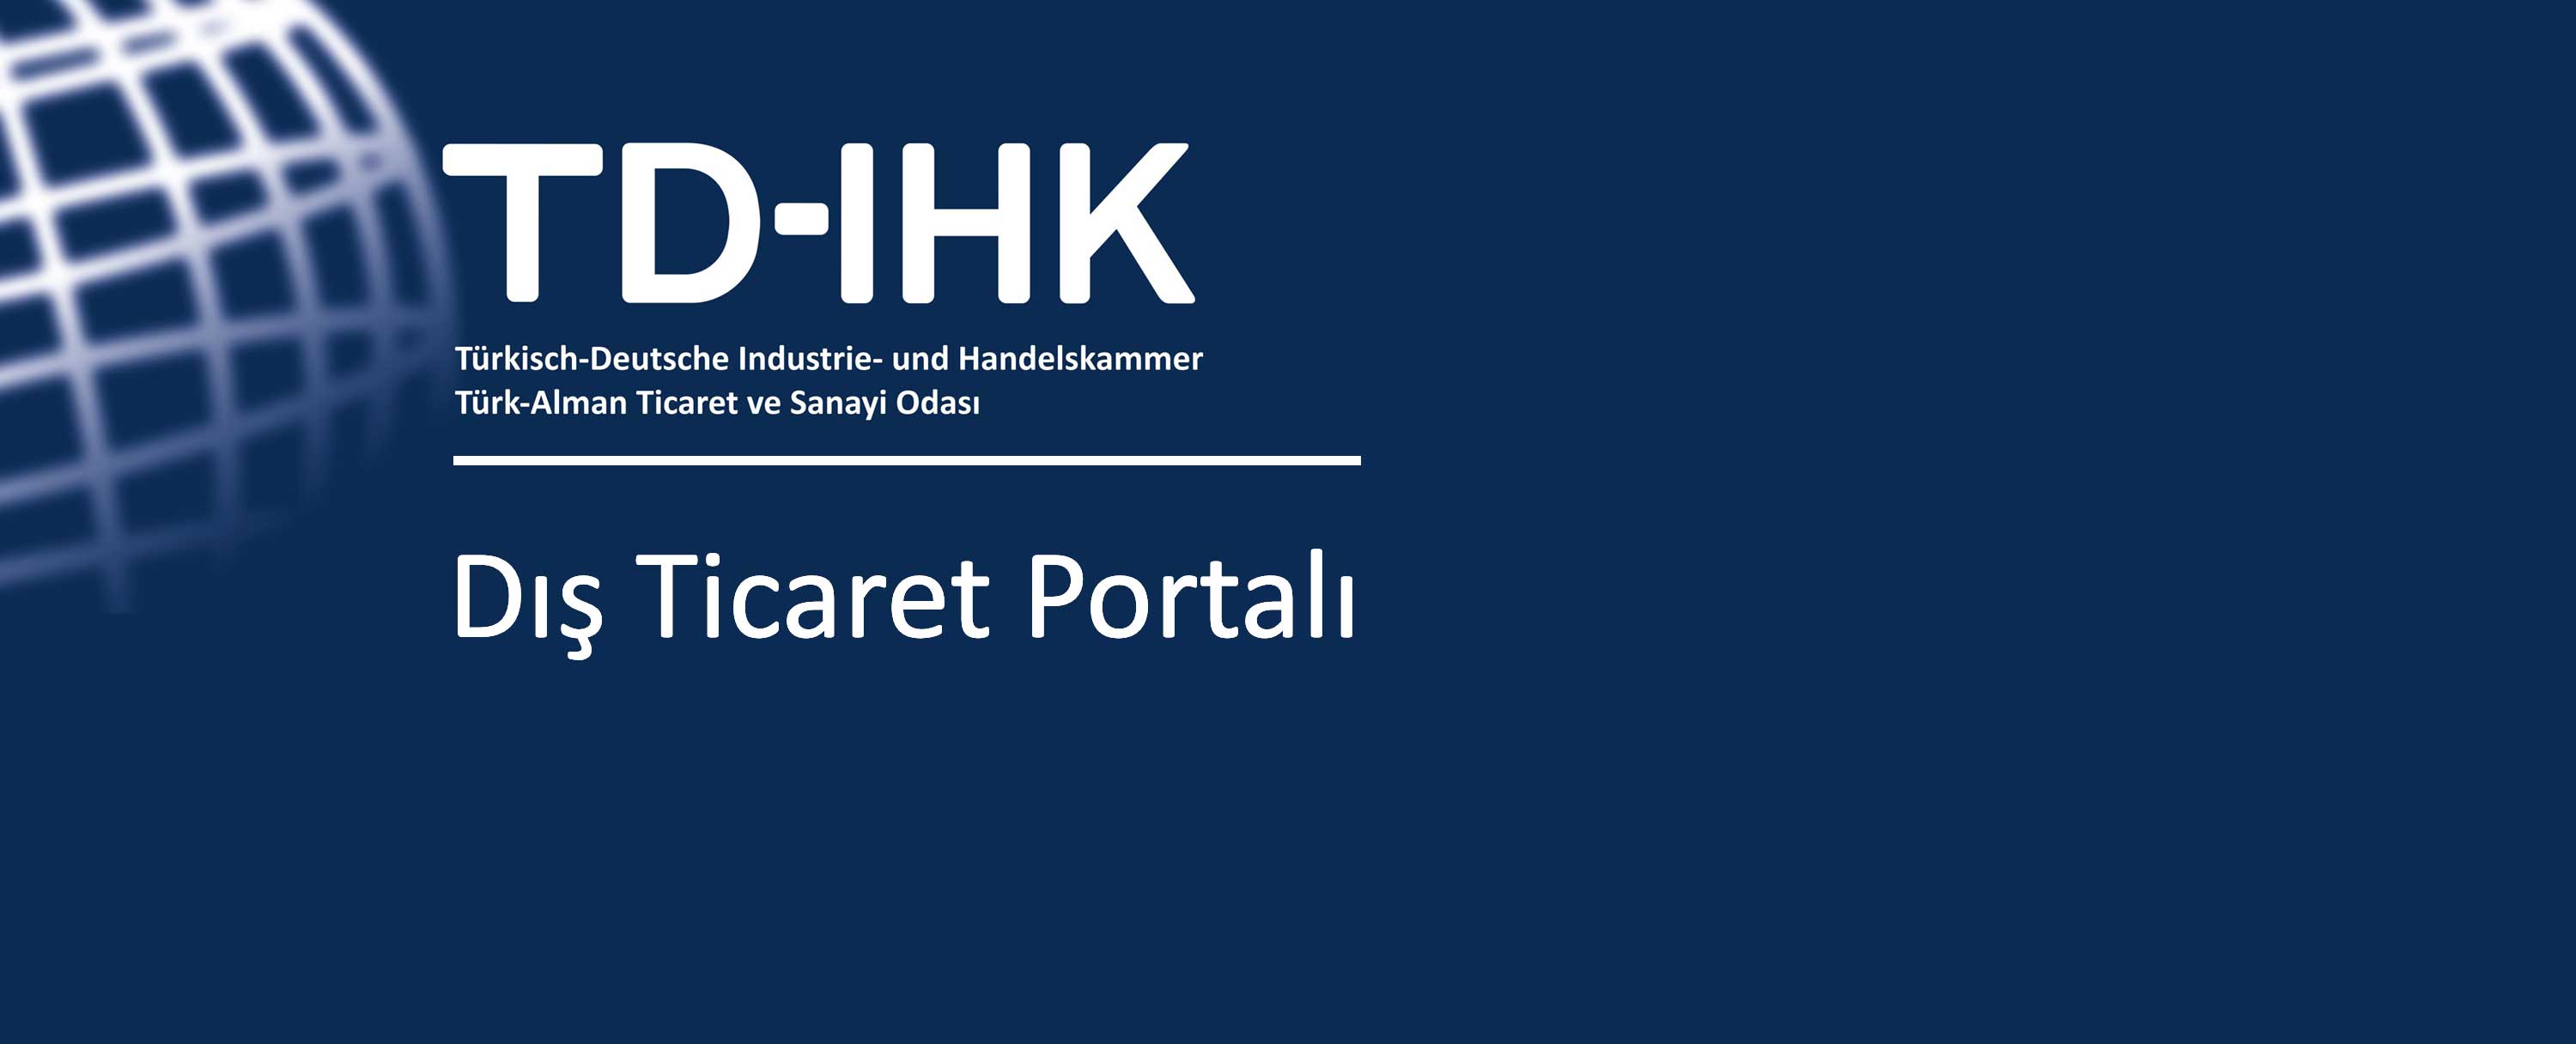 TD IHK Portal